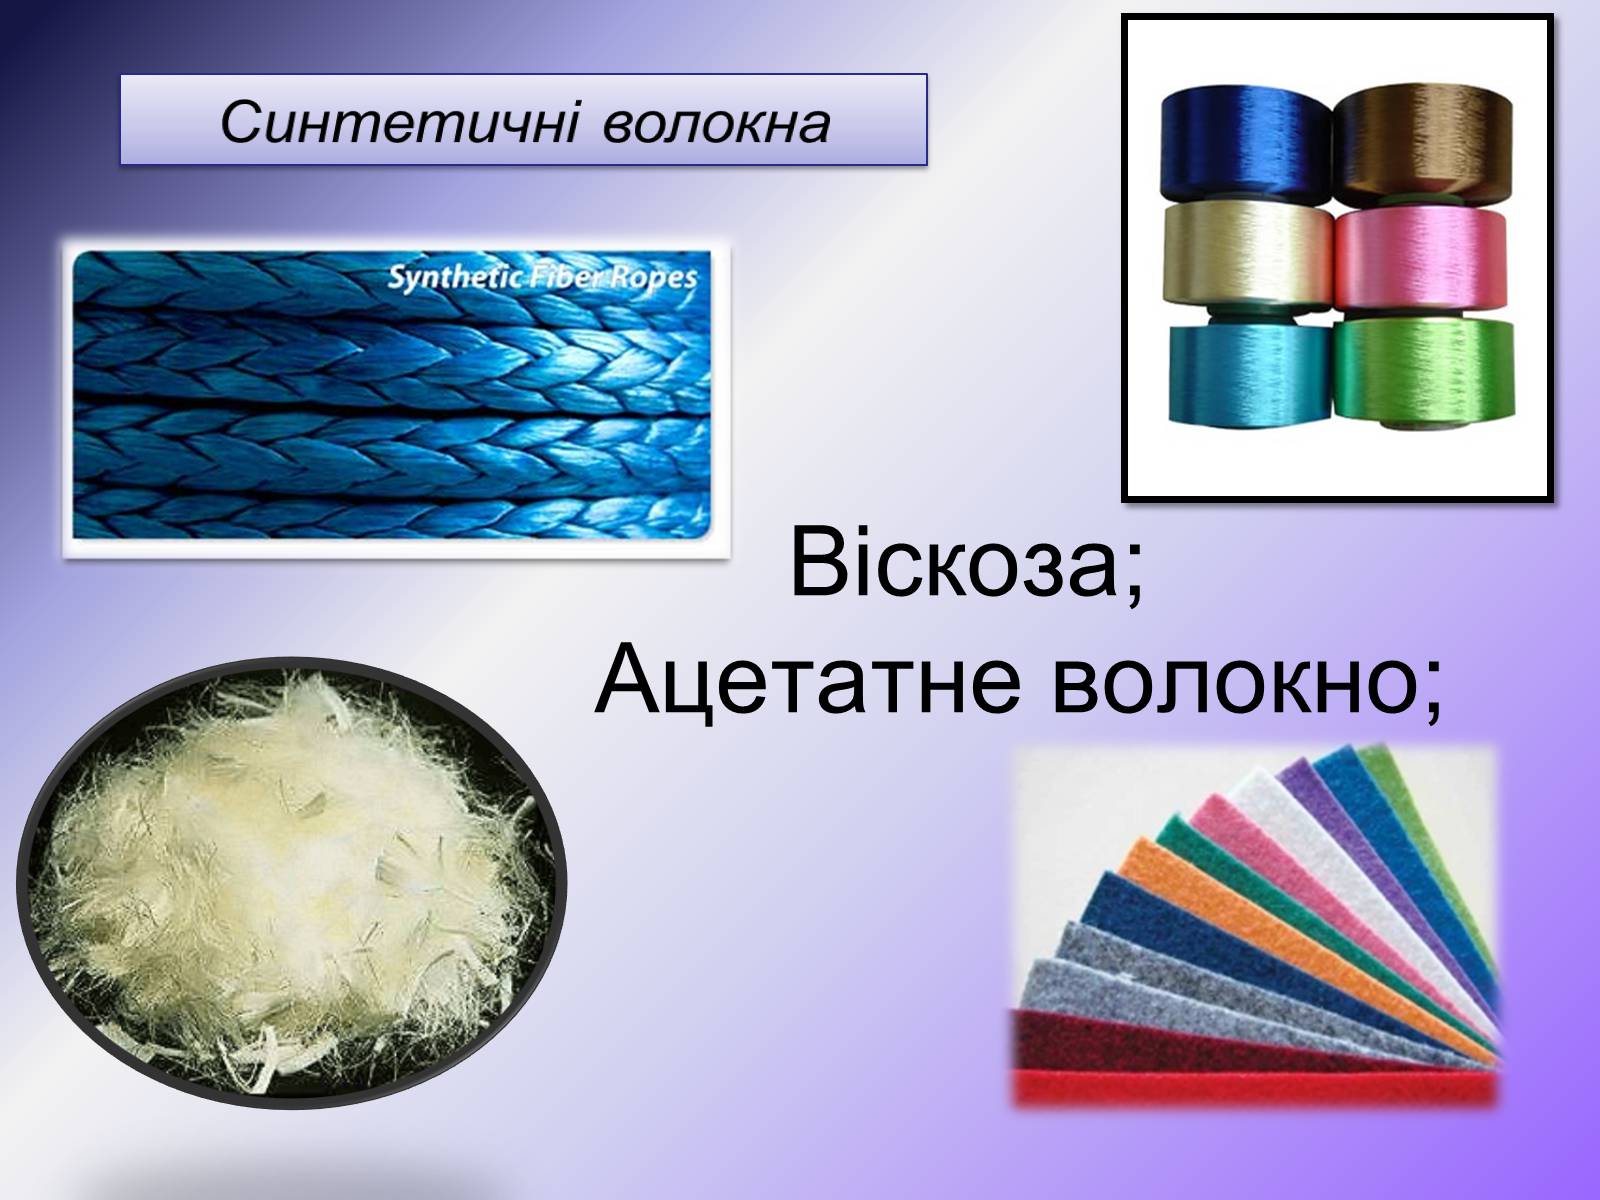 Ацетатное волокно это. Синтетические волокна. Ацетатное волокно. Ацетилцеллюлозные искусственные волокна. Изделия из искусственных волокон.